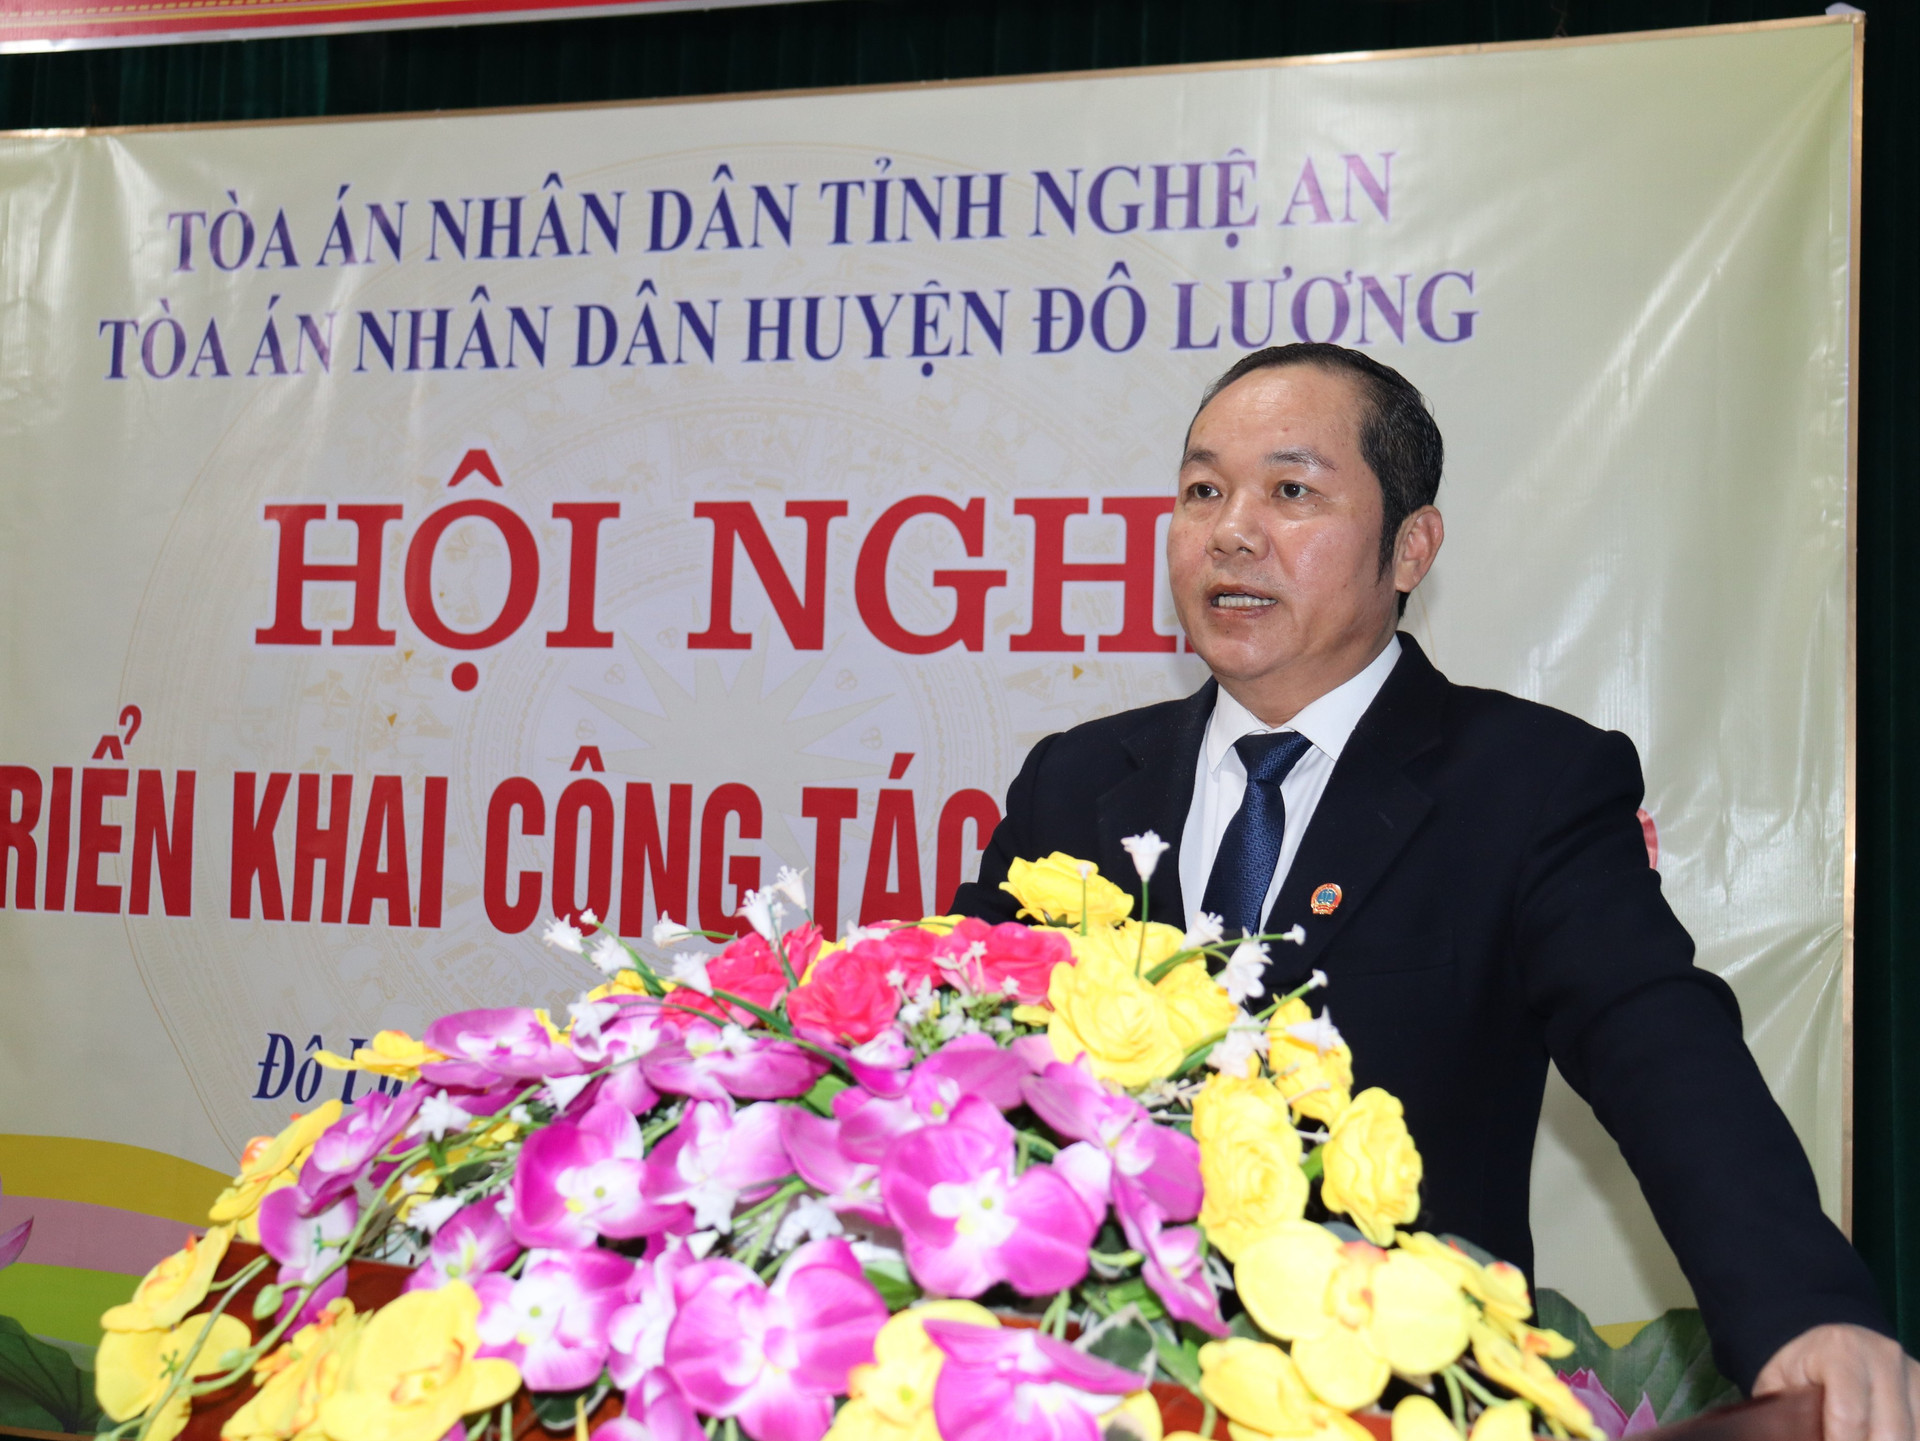 Chi bộ TAND huyện Đô Lương: Cơ sở Đảng hoàn thành xuất sắc nhiệm vụ tiêu biểu 5 năm liên tục